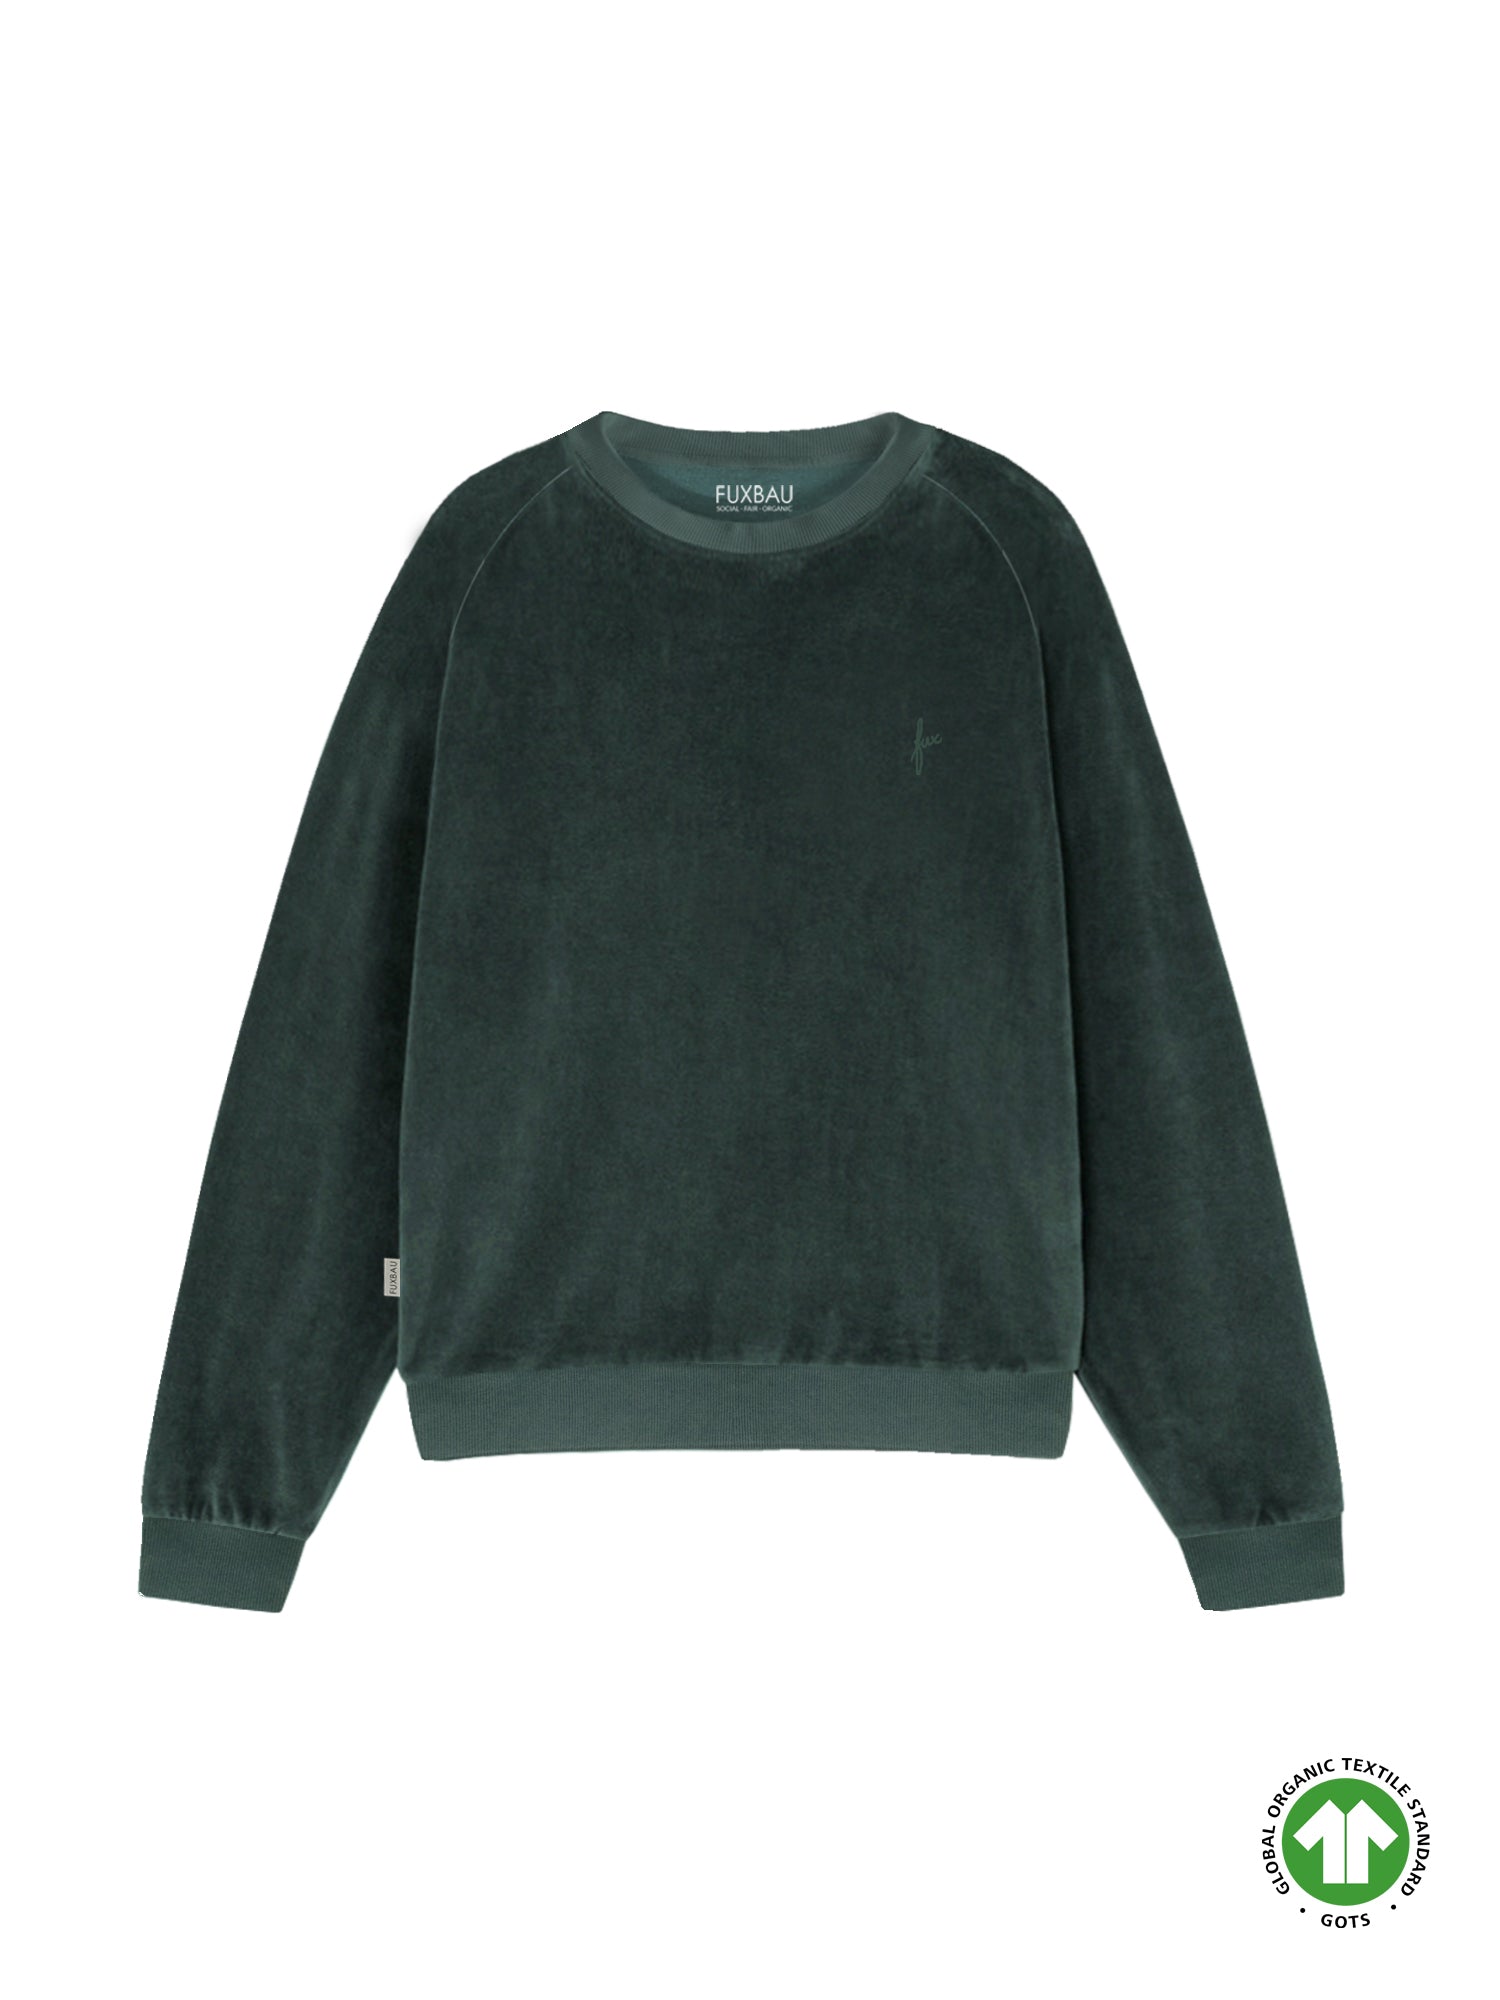 Fair Fashion FUXBAU Frauen Samt Sweater in grün aus 100% GOTS zertifizierter Biobaumwolle made in Portugal.